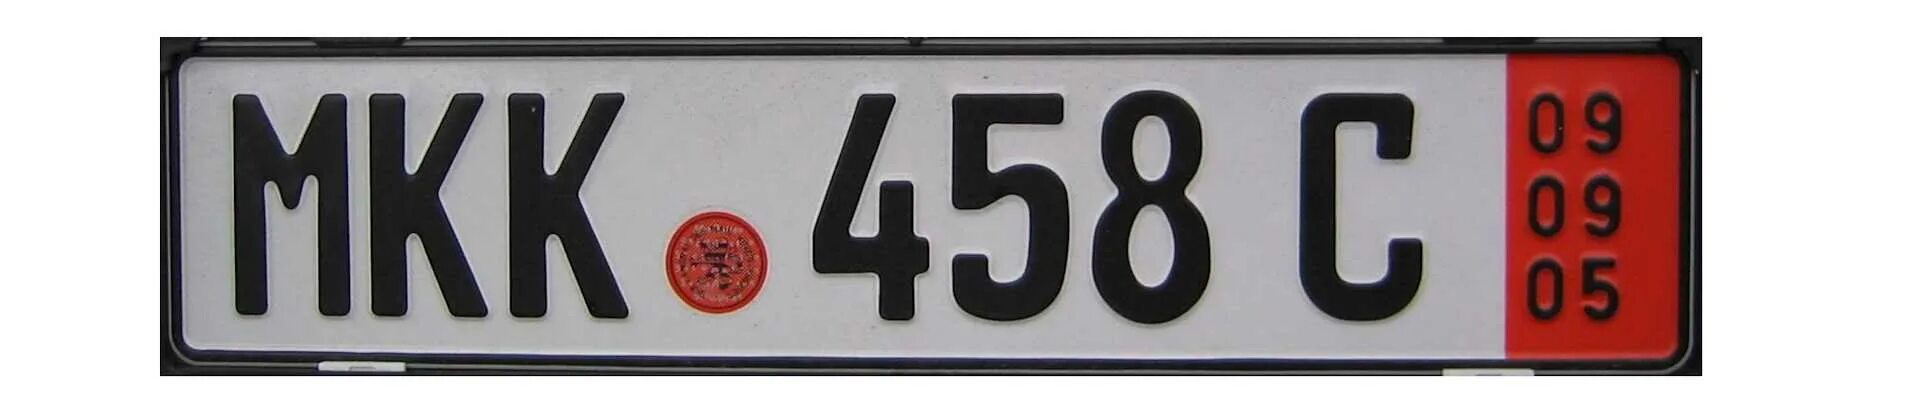 Транзитные гос номера Германии. Автомобильный номерной знак. Немецкие номера машин транзитные. Номерной знак автомобиля Германии. Номера машин на красном фоне